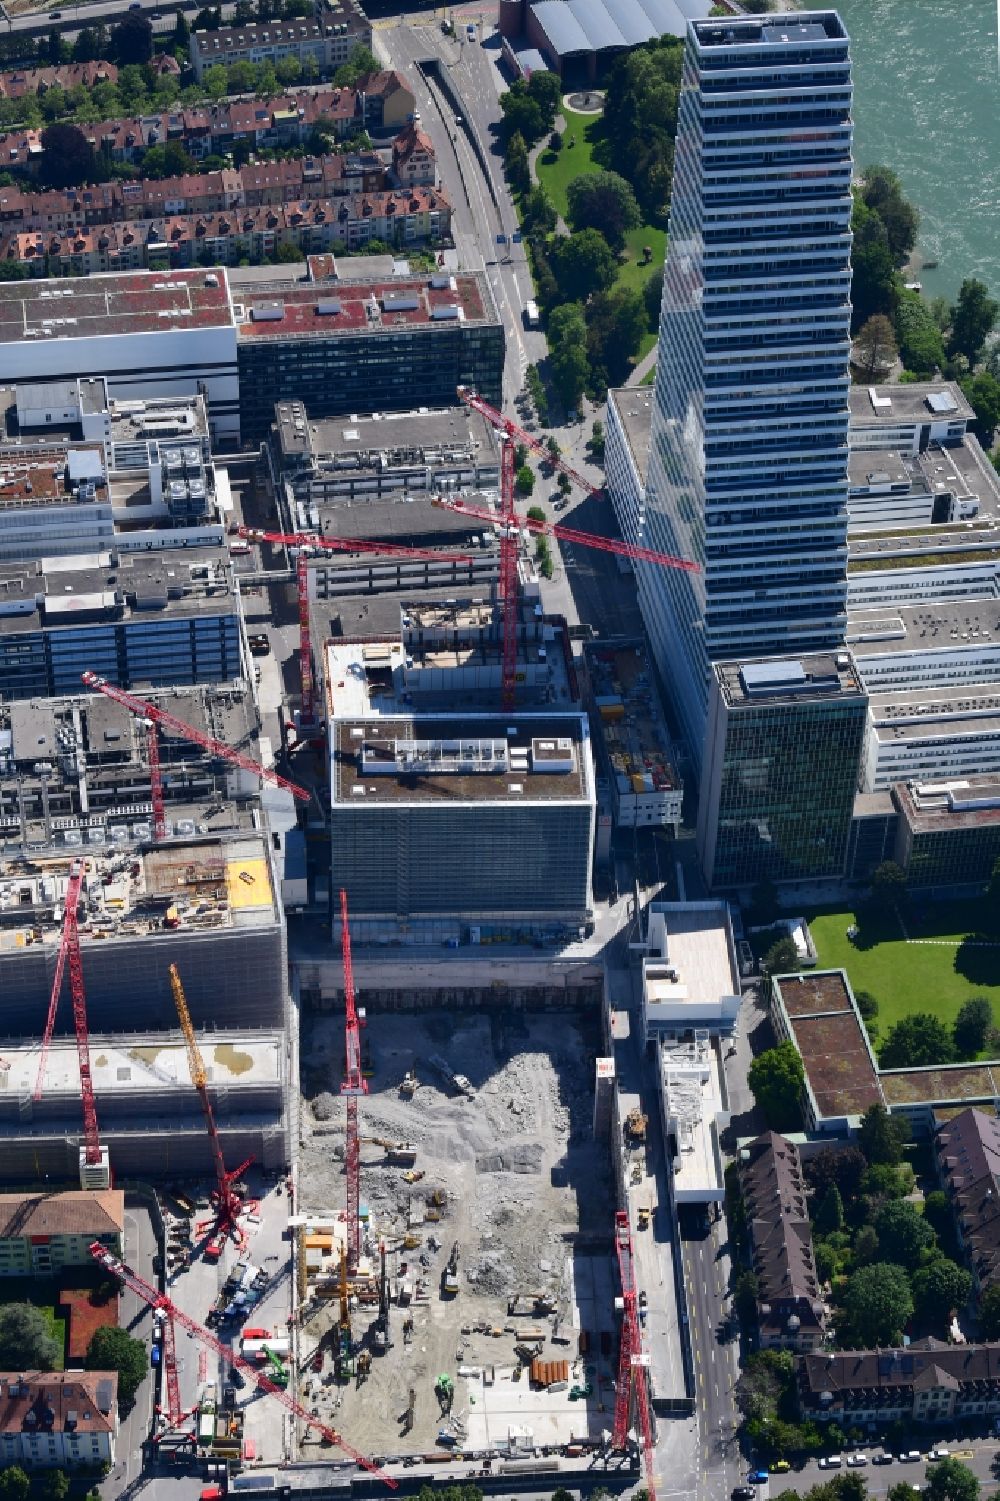 Luftbild Basel - Erweiterungs- Baustellen auf dem Areal und Betriebsgelände der Pharmafirma Roche mit dem Roche- Turm - Hochhaus in Basel in der Schweiz